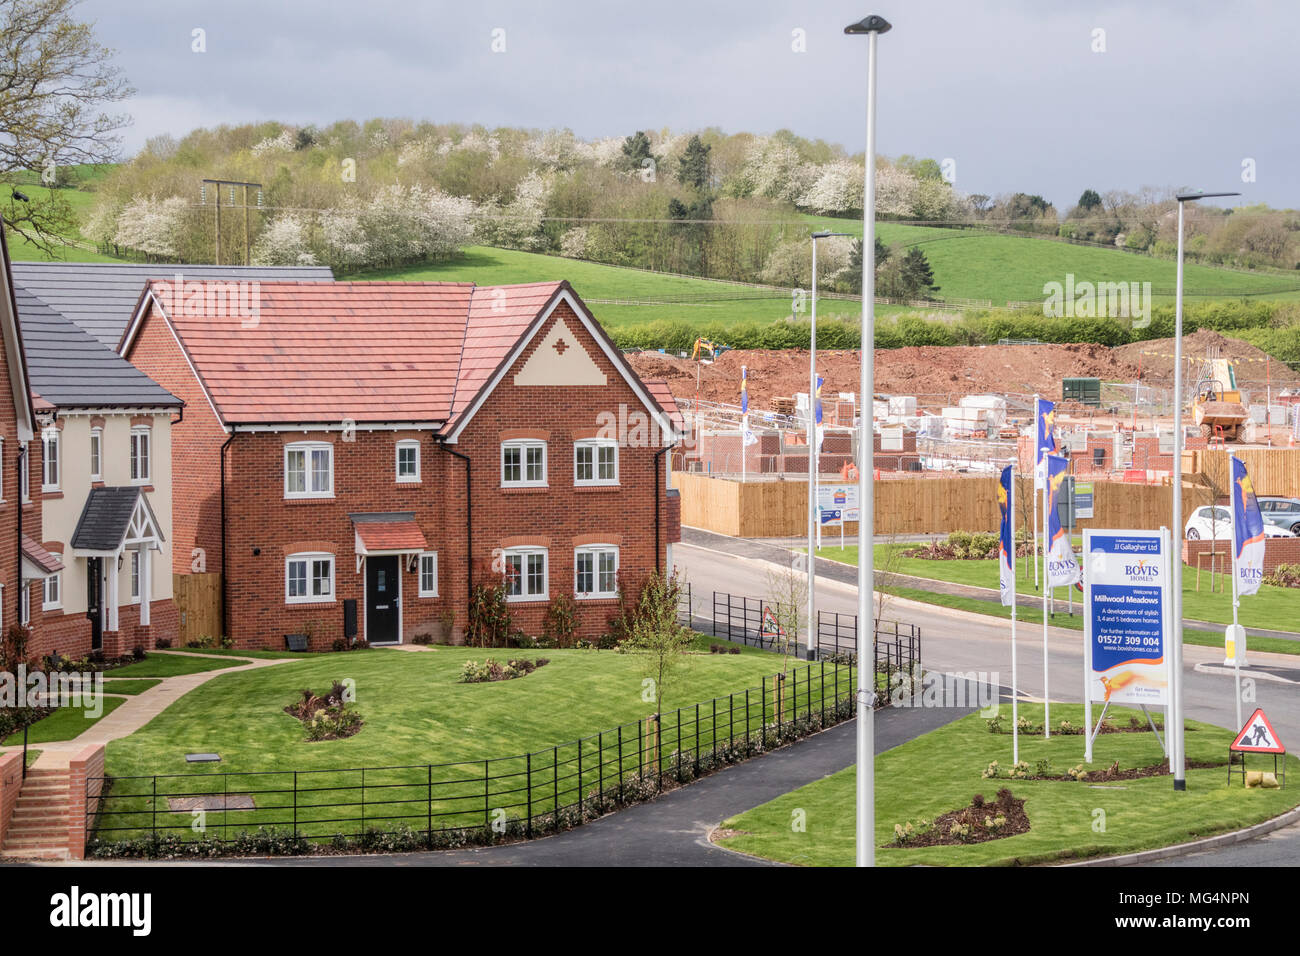 Développement de nouveaux logements par Bovis Homes sur l'ancien territoire de la ceinture verte, Redditch, Worcestershire, Angleterre, Royaume-Uni. Banque D'Images